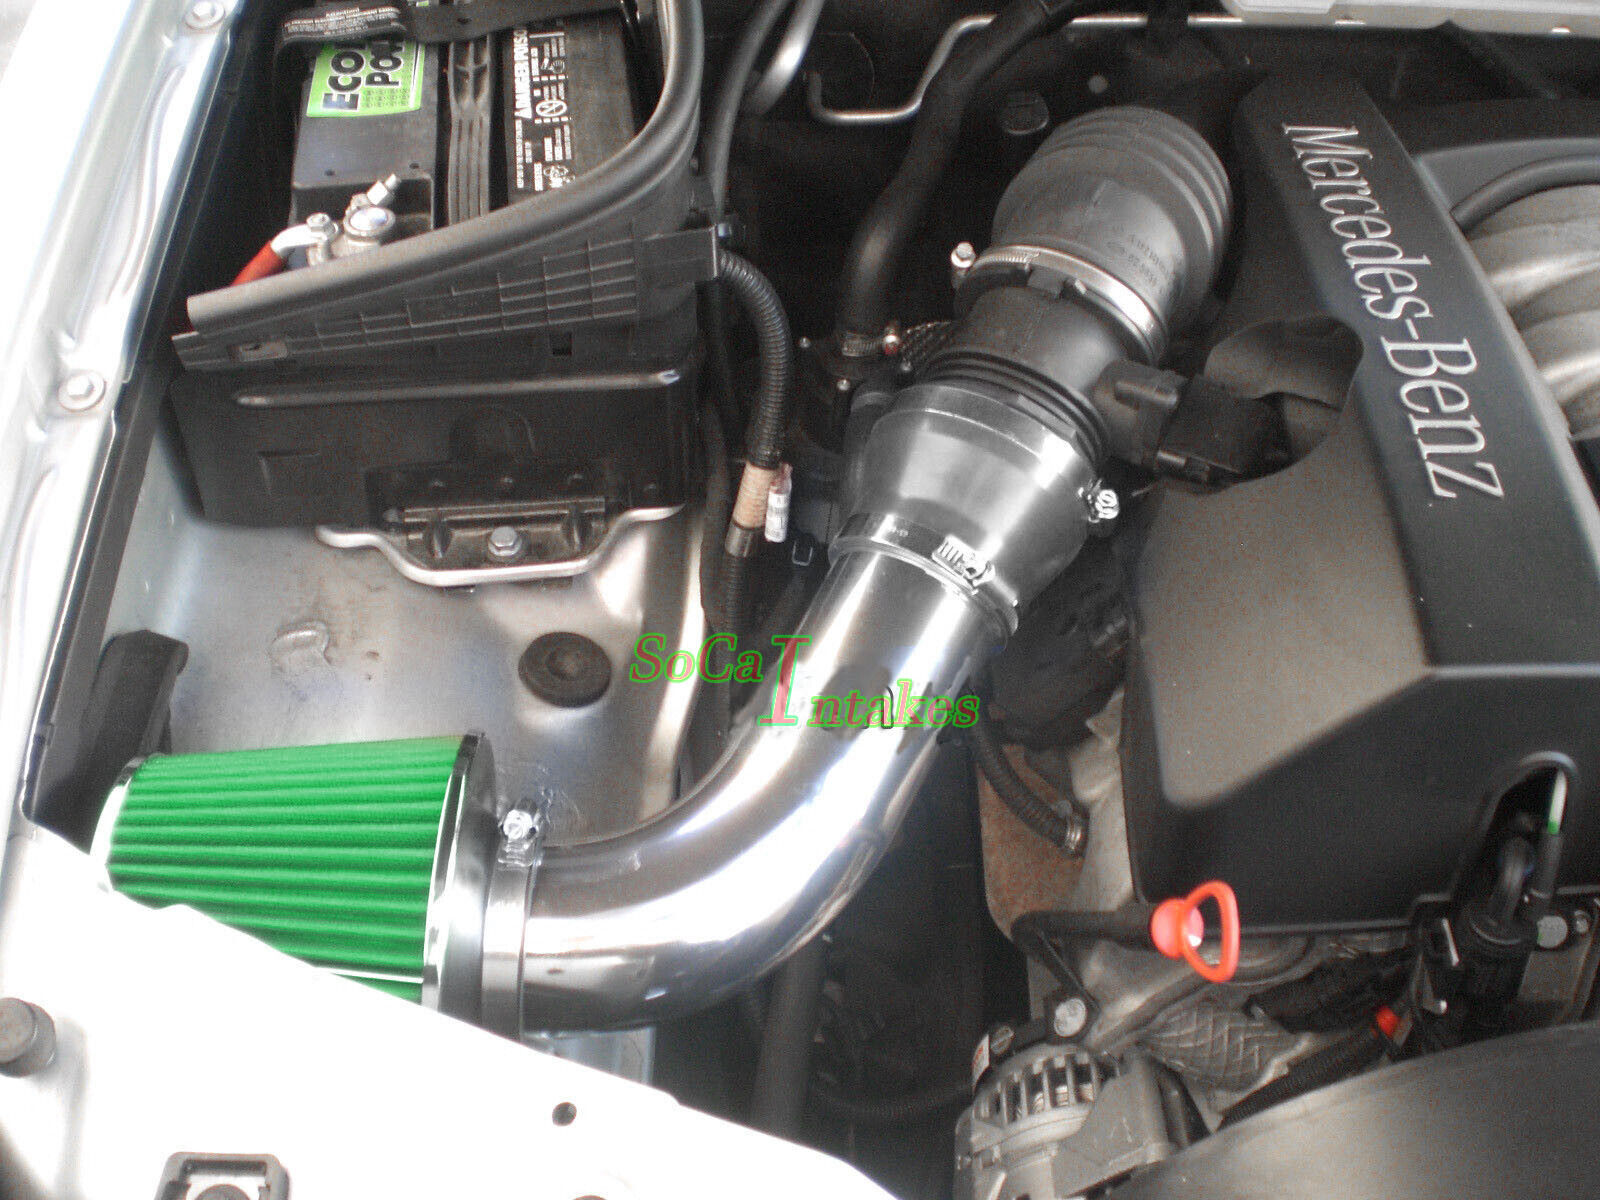 Black Green Air Intake Kit & Filter For 1998- 02 Mercedes E320 E430 ML320 CLK320